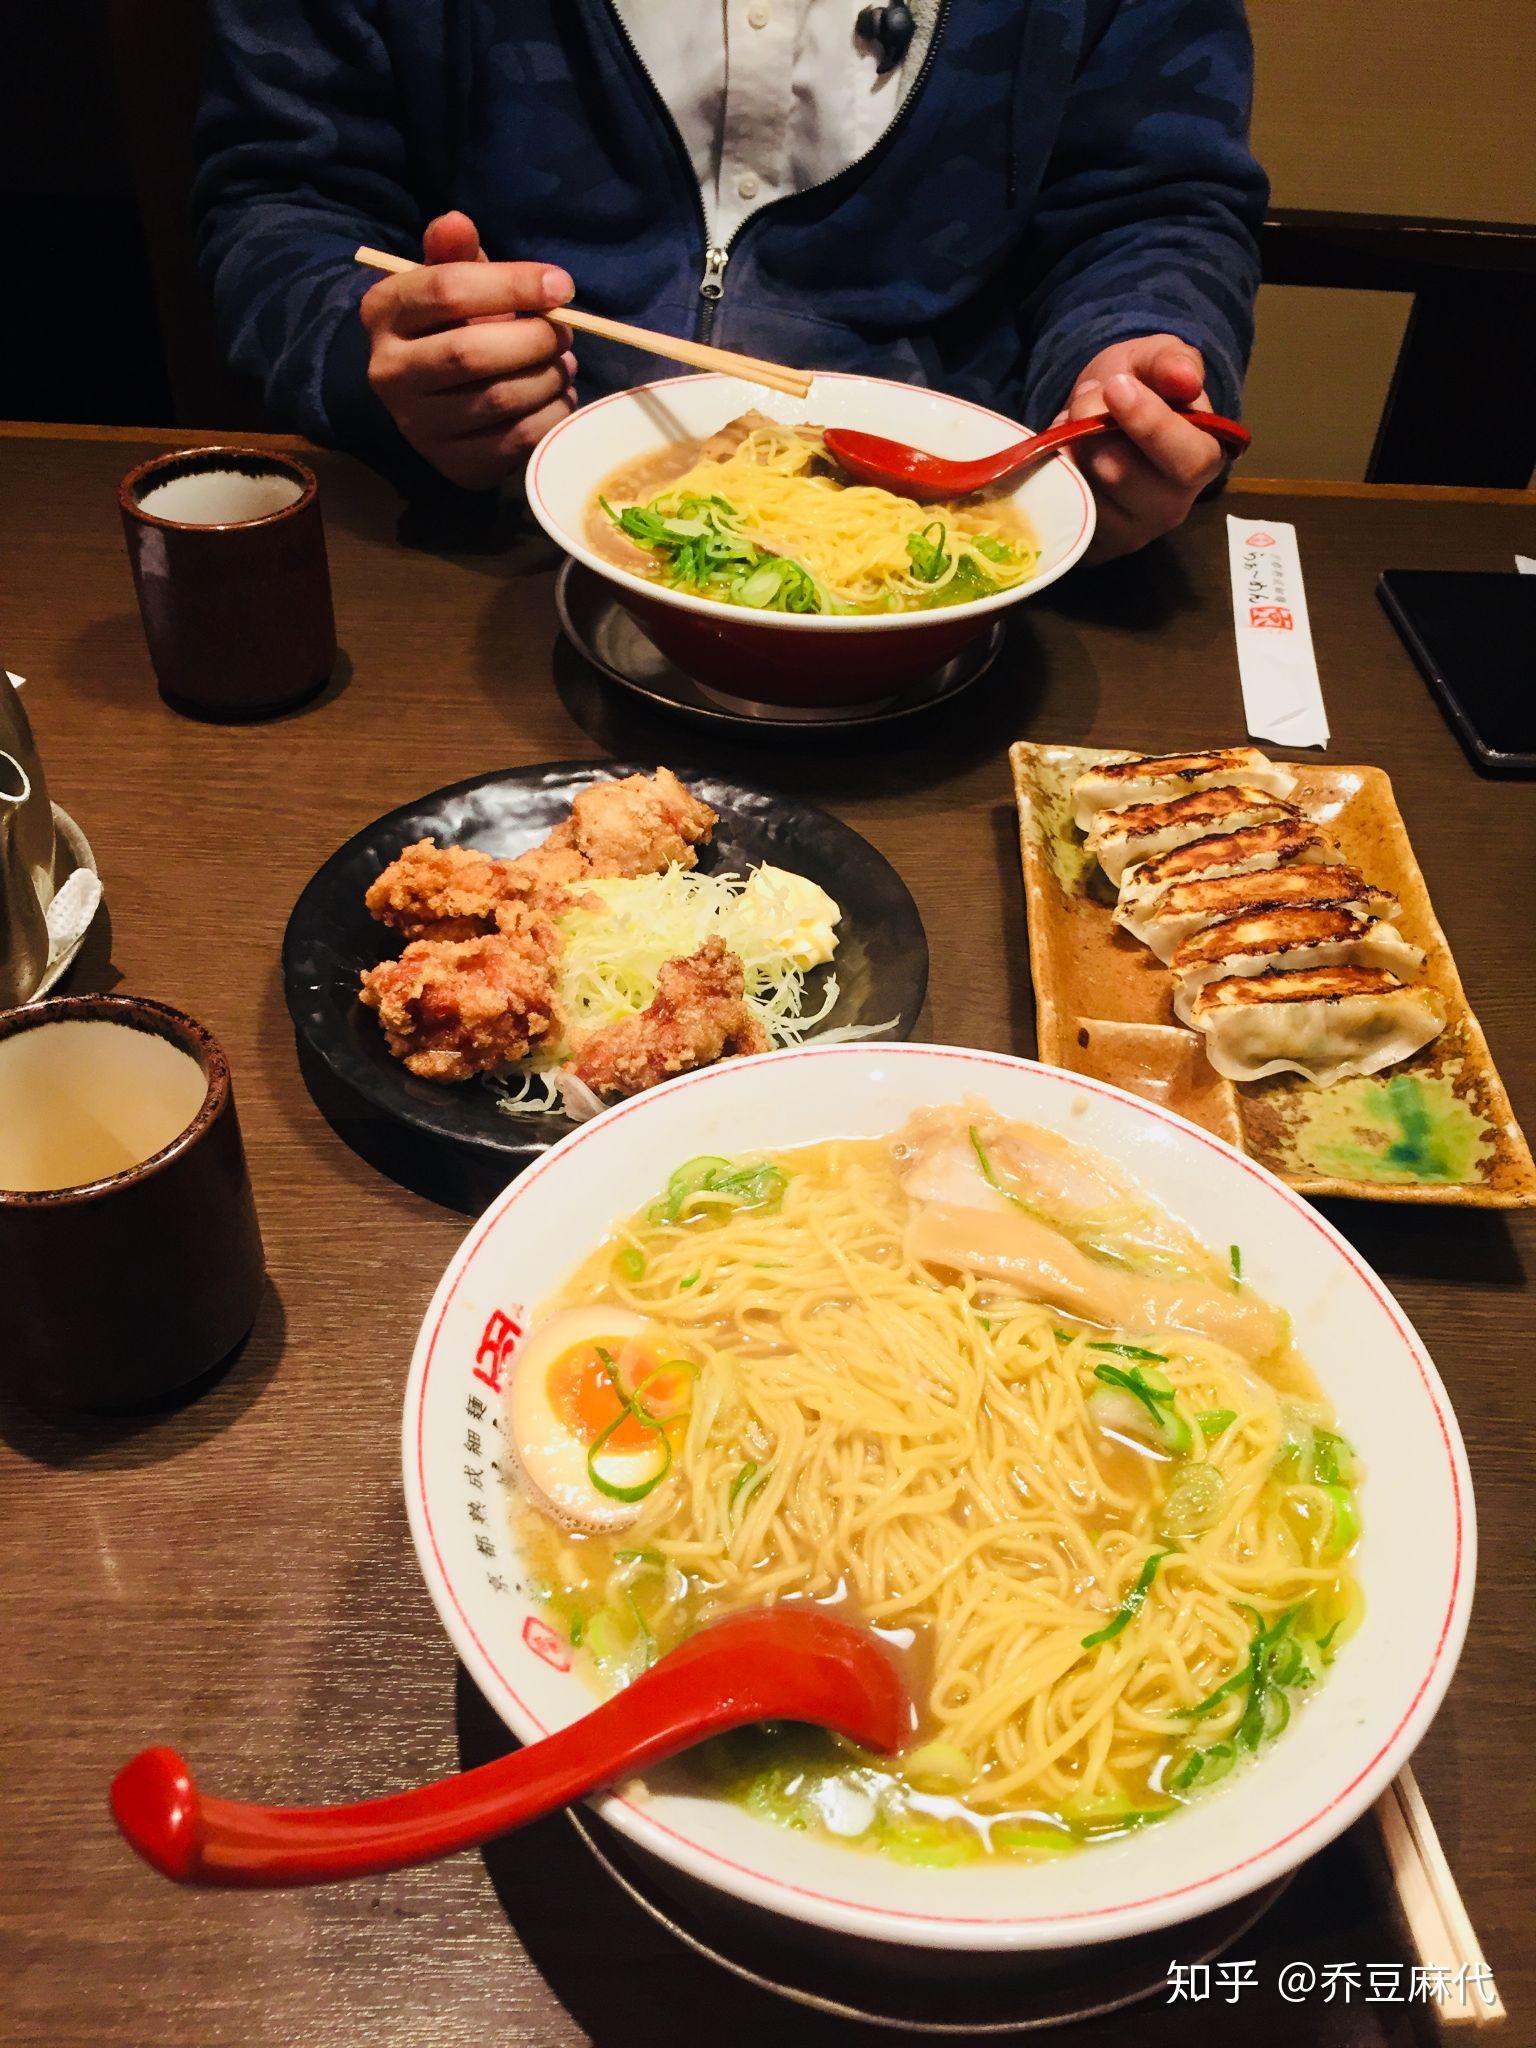 为什么说日本料理难吃的要死,日本社会压抑的